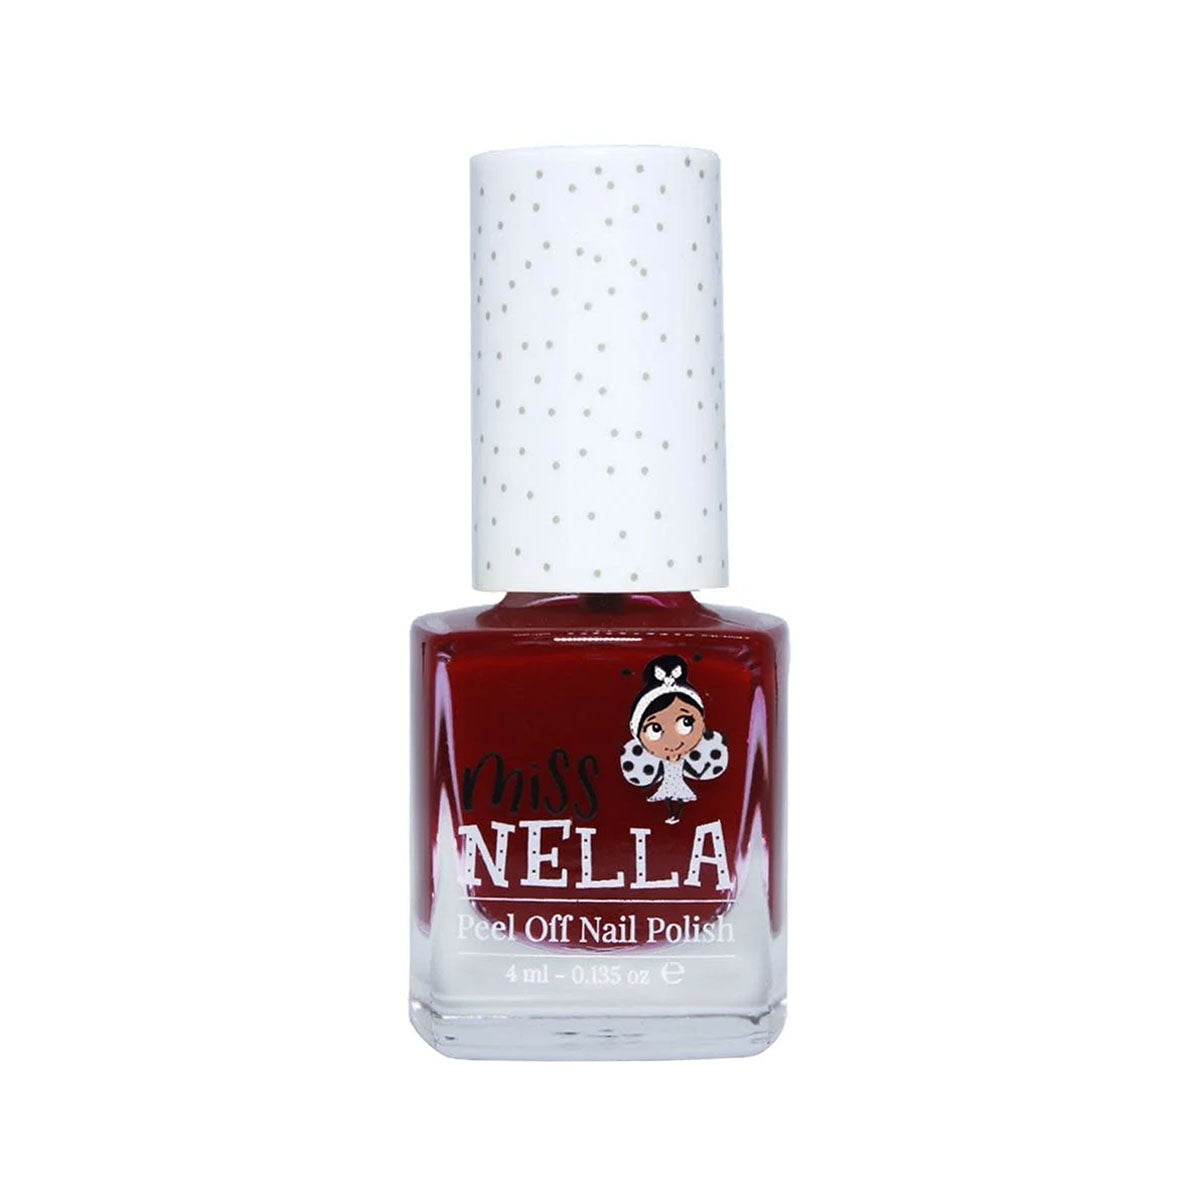 Laat de nageltjes van jouw kindje shinen met de nagellak fav teacher van het merk Miss Nella. De peel off nagellak is speciaal ontworpen voor kinderen en is vrij van chemicaliën. In verschillende kleuren. VanZus